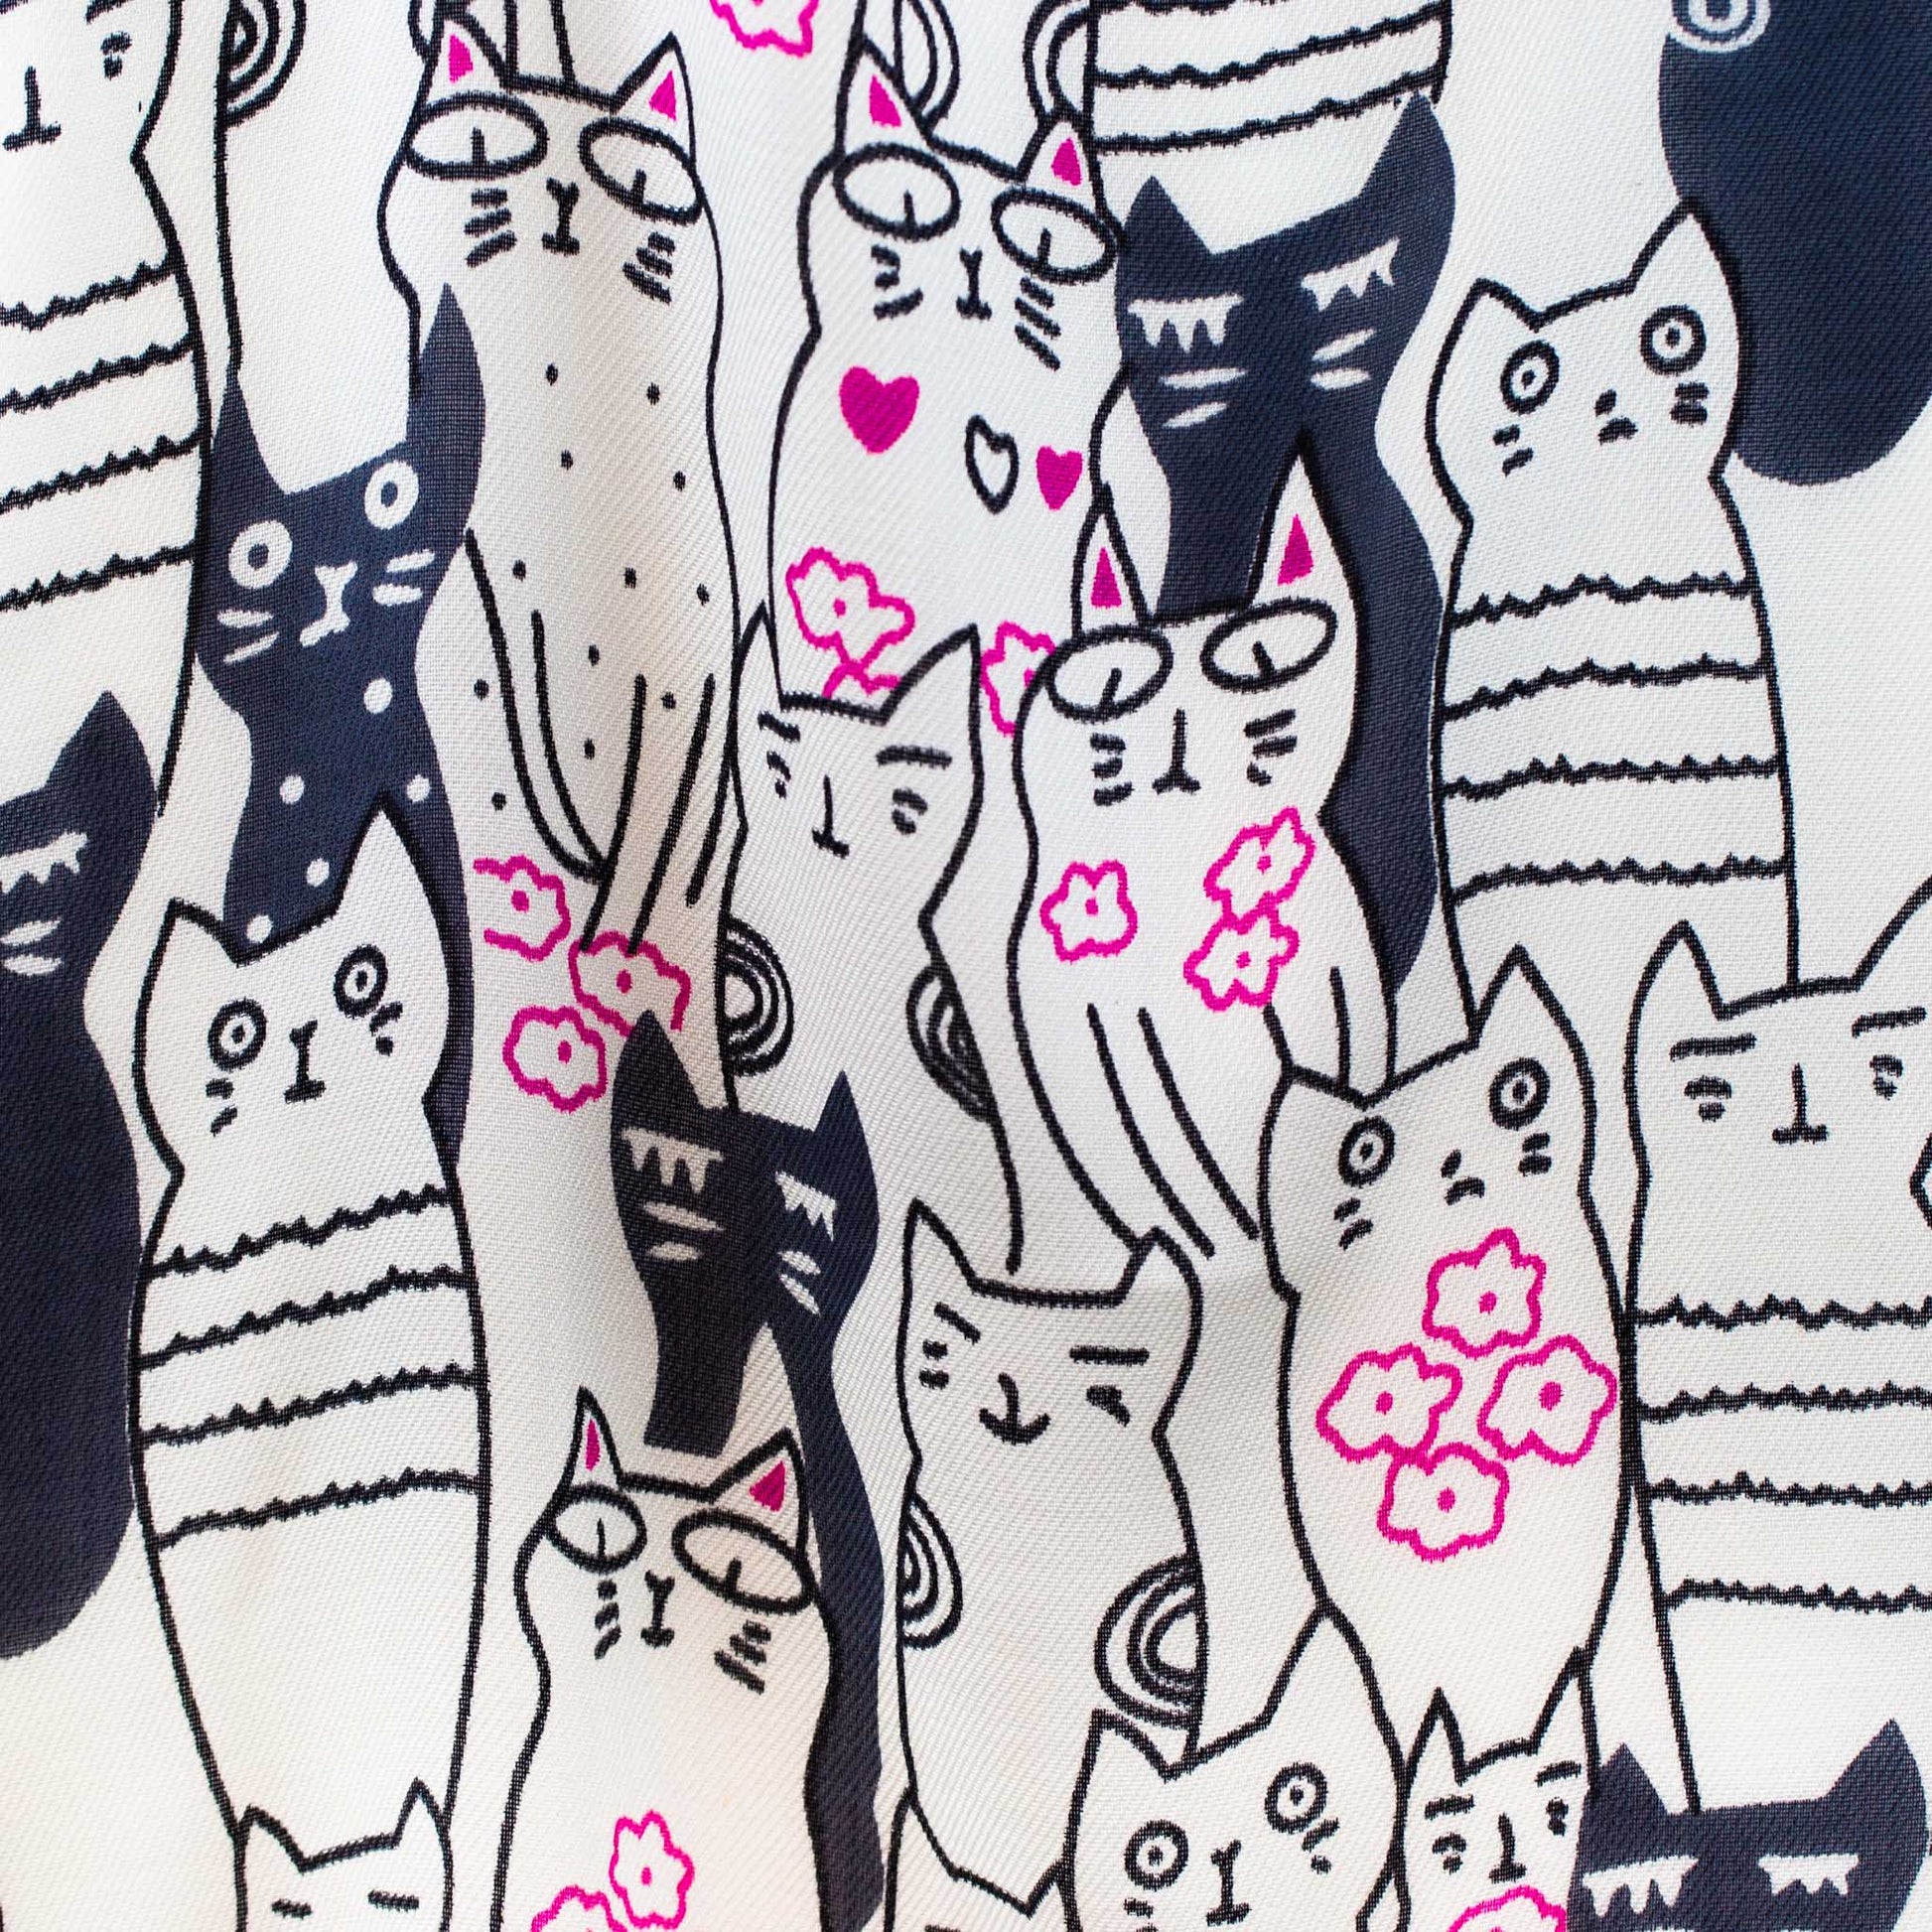 Eșarfă damă, imprimeu cu pisici curioase, 175 x 70 cm - Alb, Gri, Roz